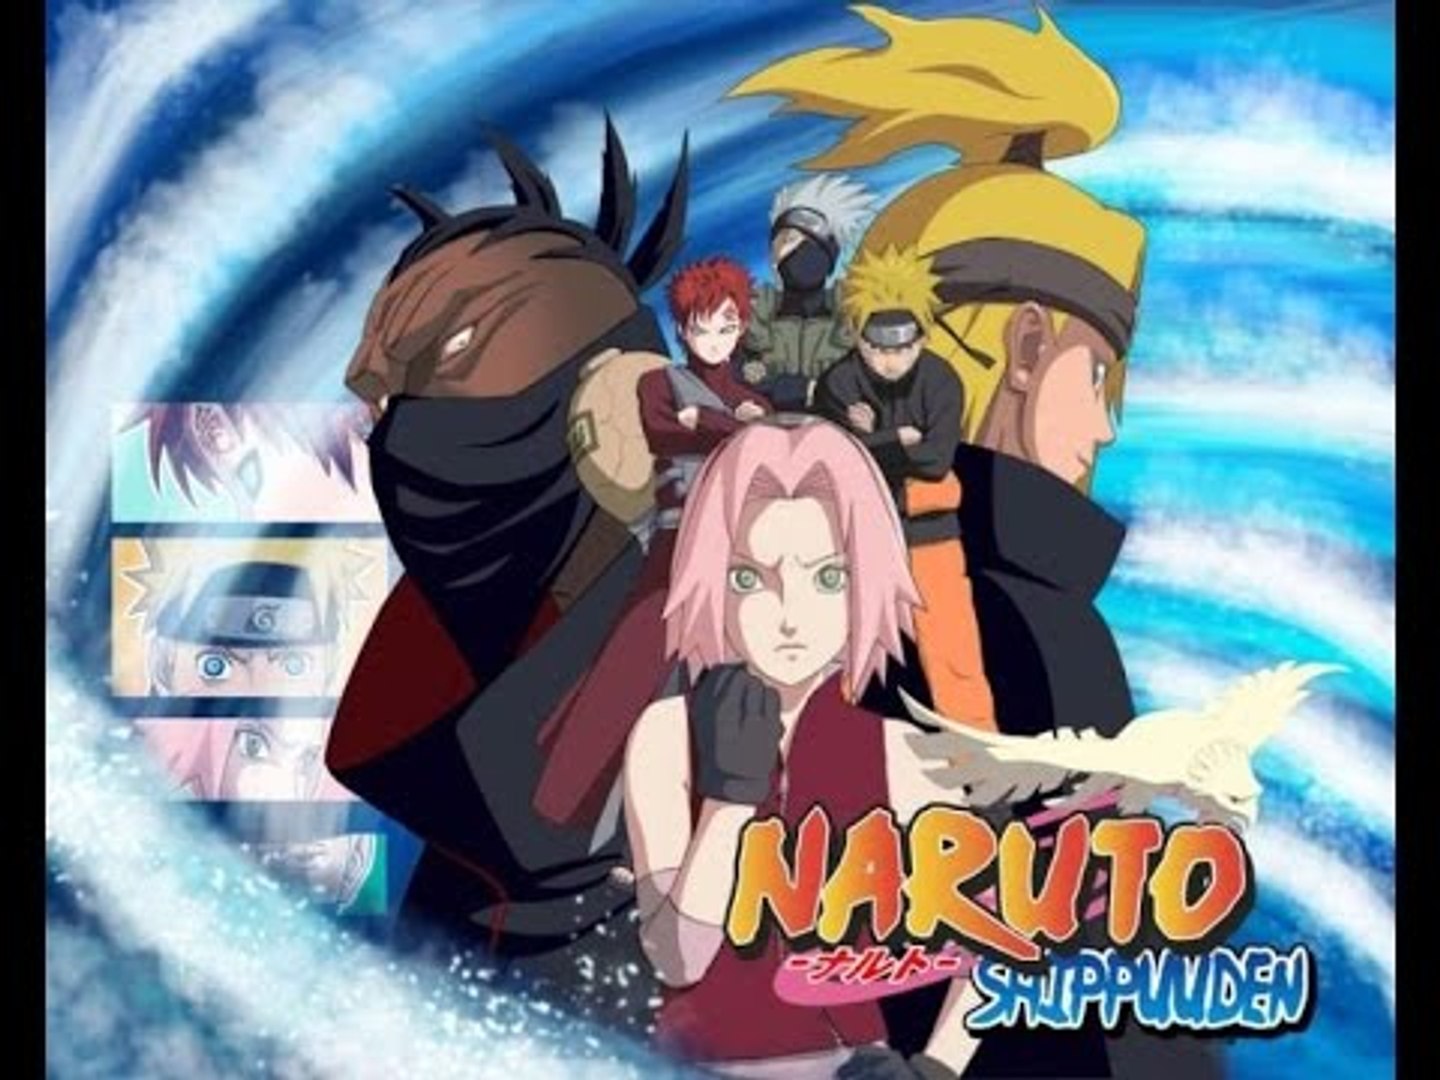 Naruto shippuden 2 temporada dublado